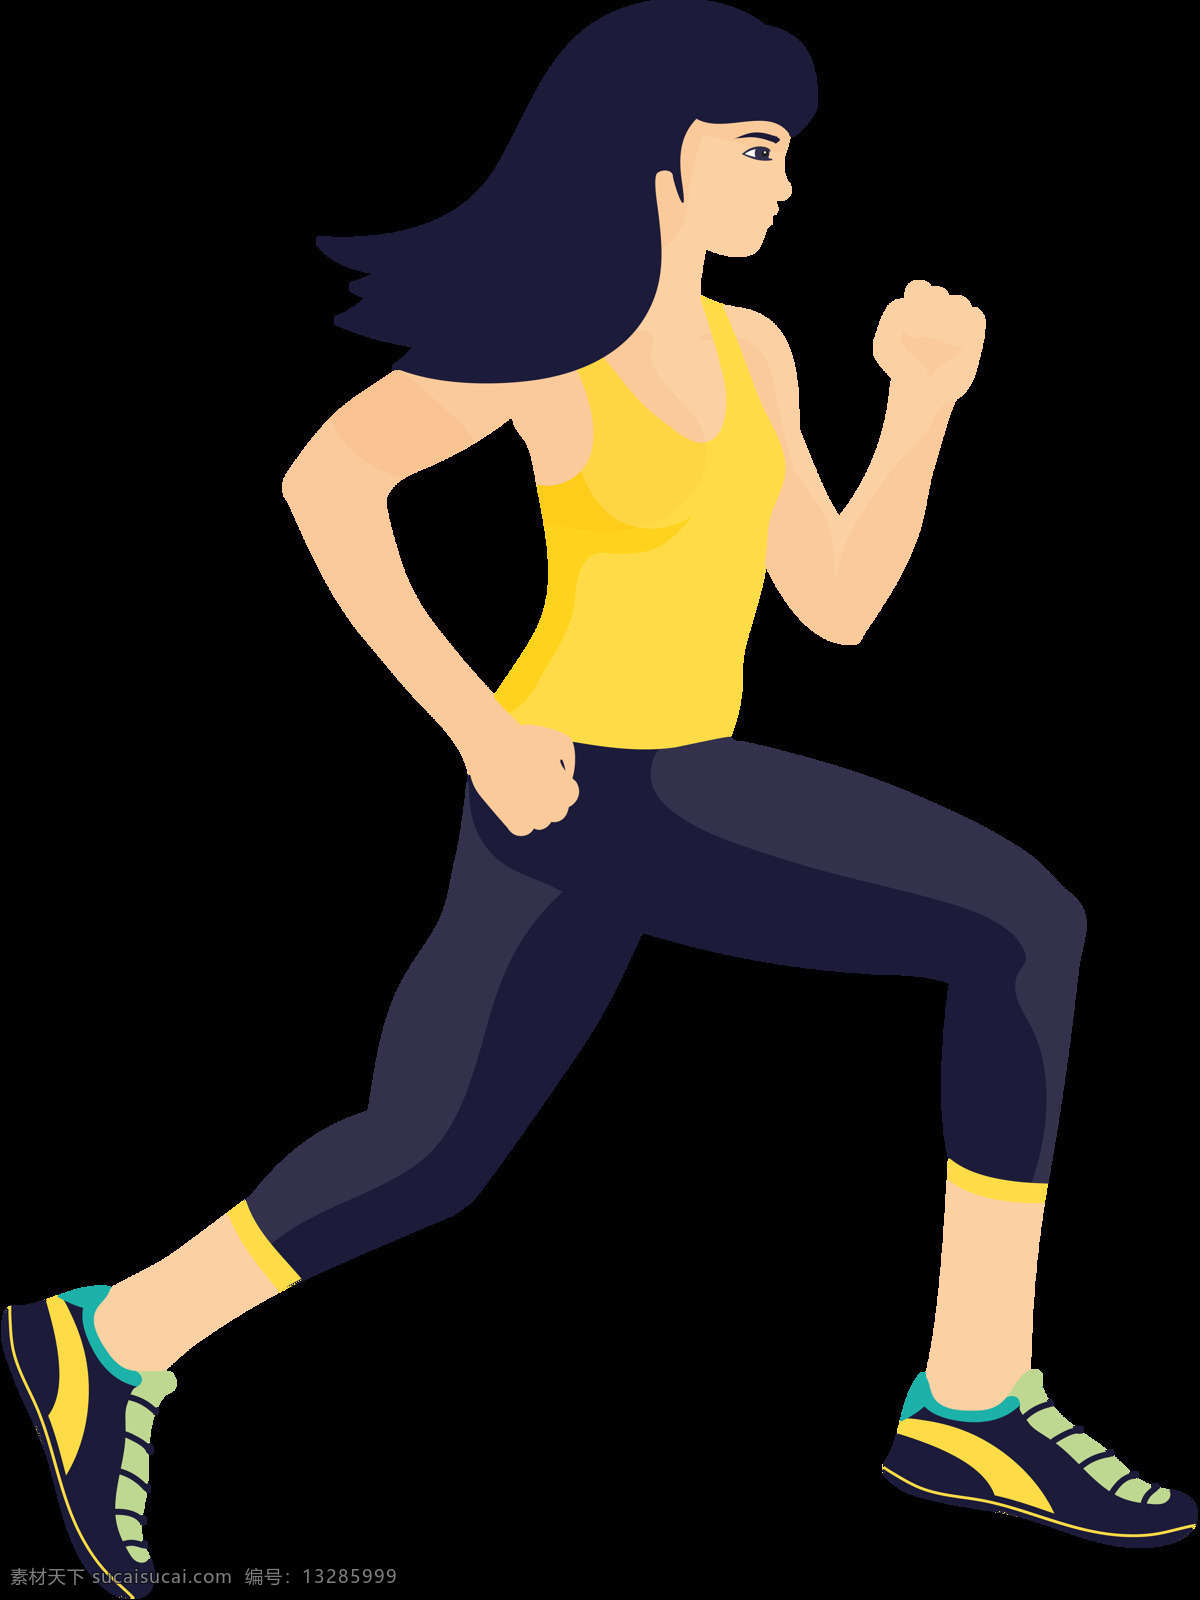 黄 衣服 女人 跑步 免 抠 透明 图 层 卡通奔跑的人 运动会 励志 狂跑 起跑 狂欢人群 奔跑吧少年 体育素材 奔跑剪影 跑步的人 奔跑素材 运动人物 卡通运动 跑步人物